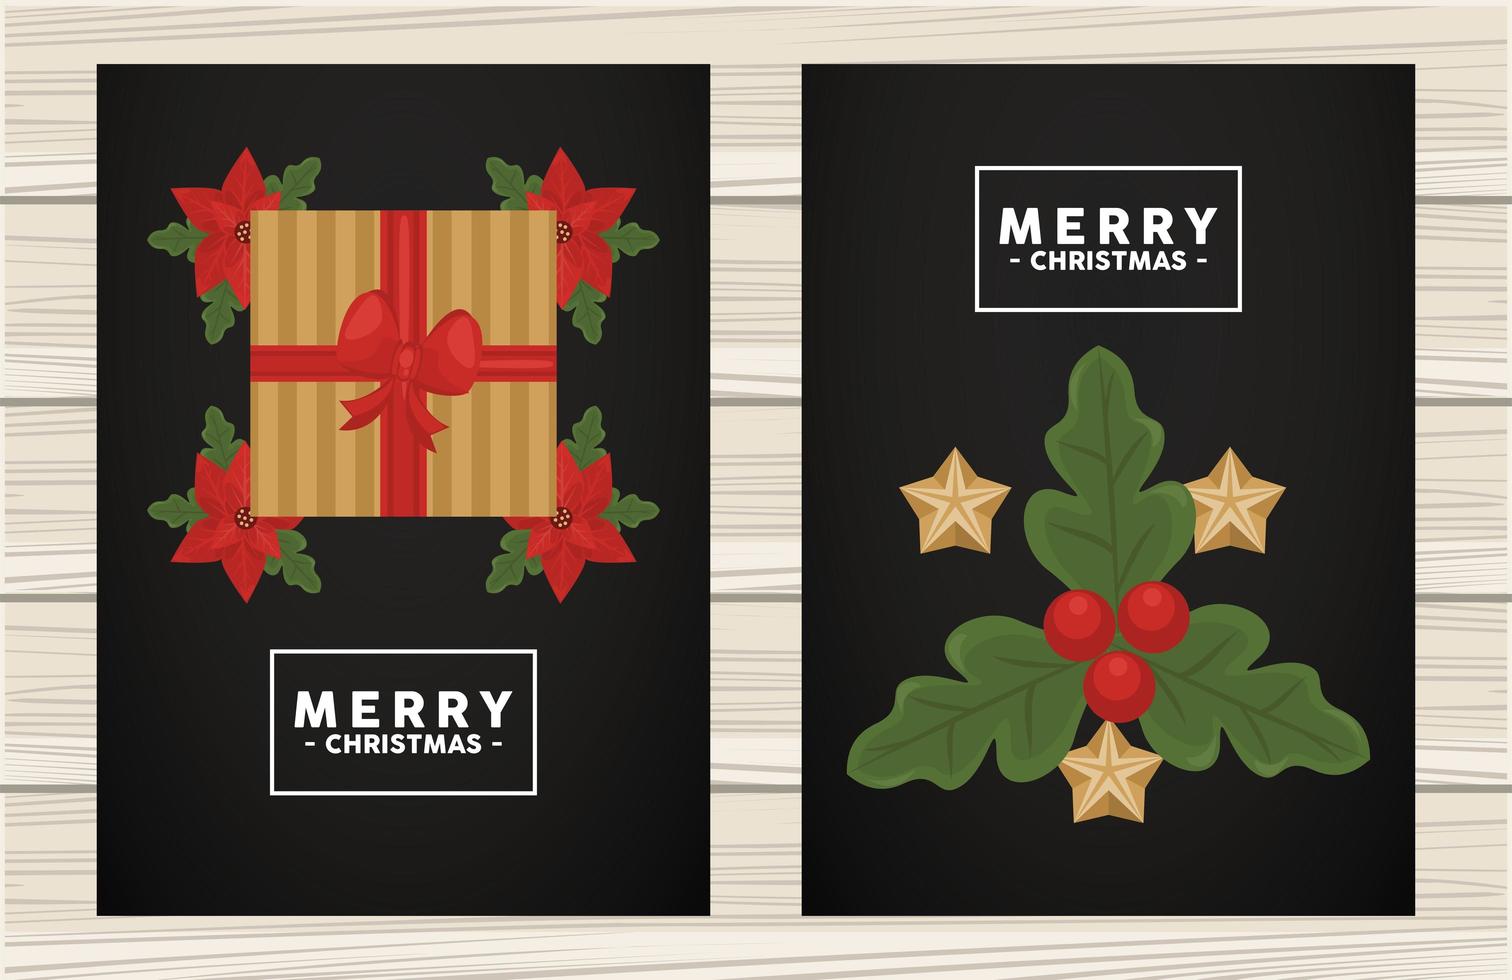 vrolijk kerstfeest belettering in vierkant frame met cadeau en bladeren vector